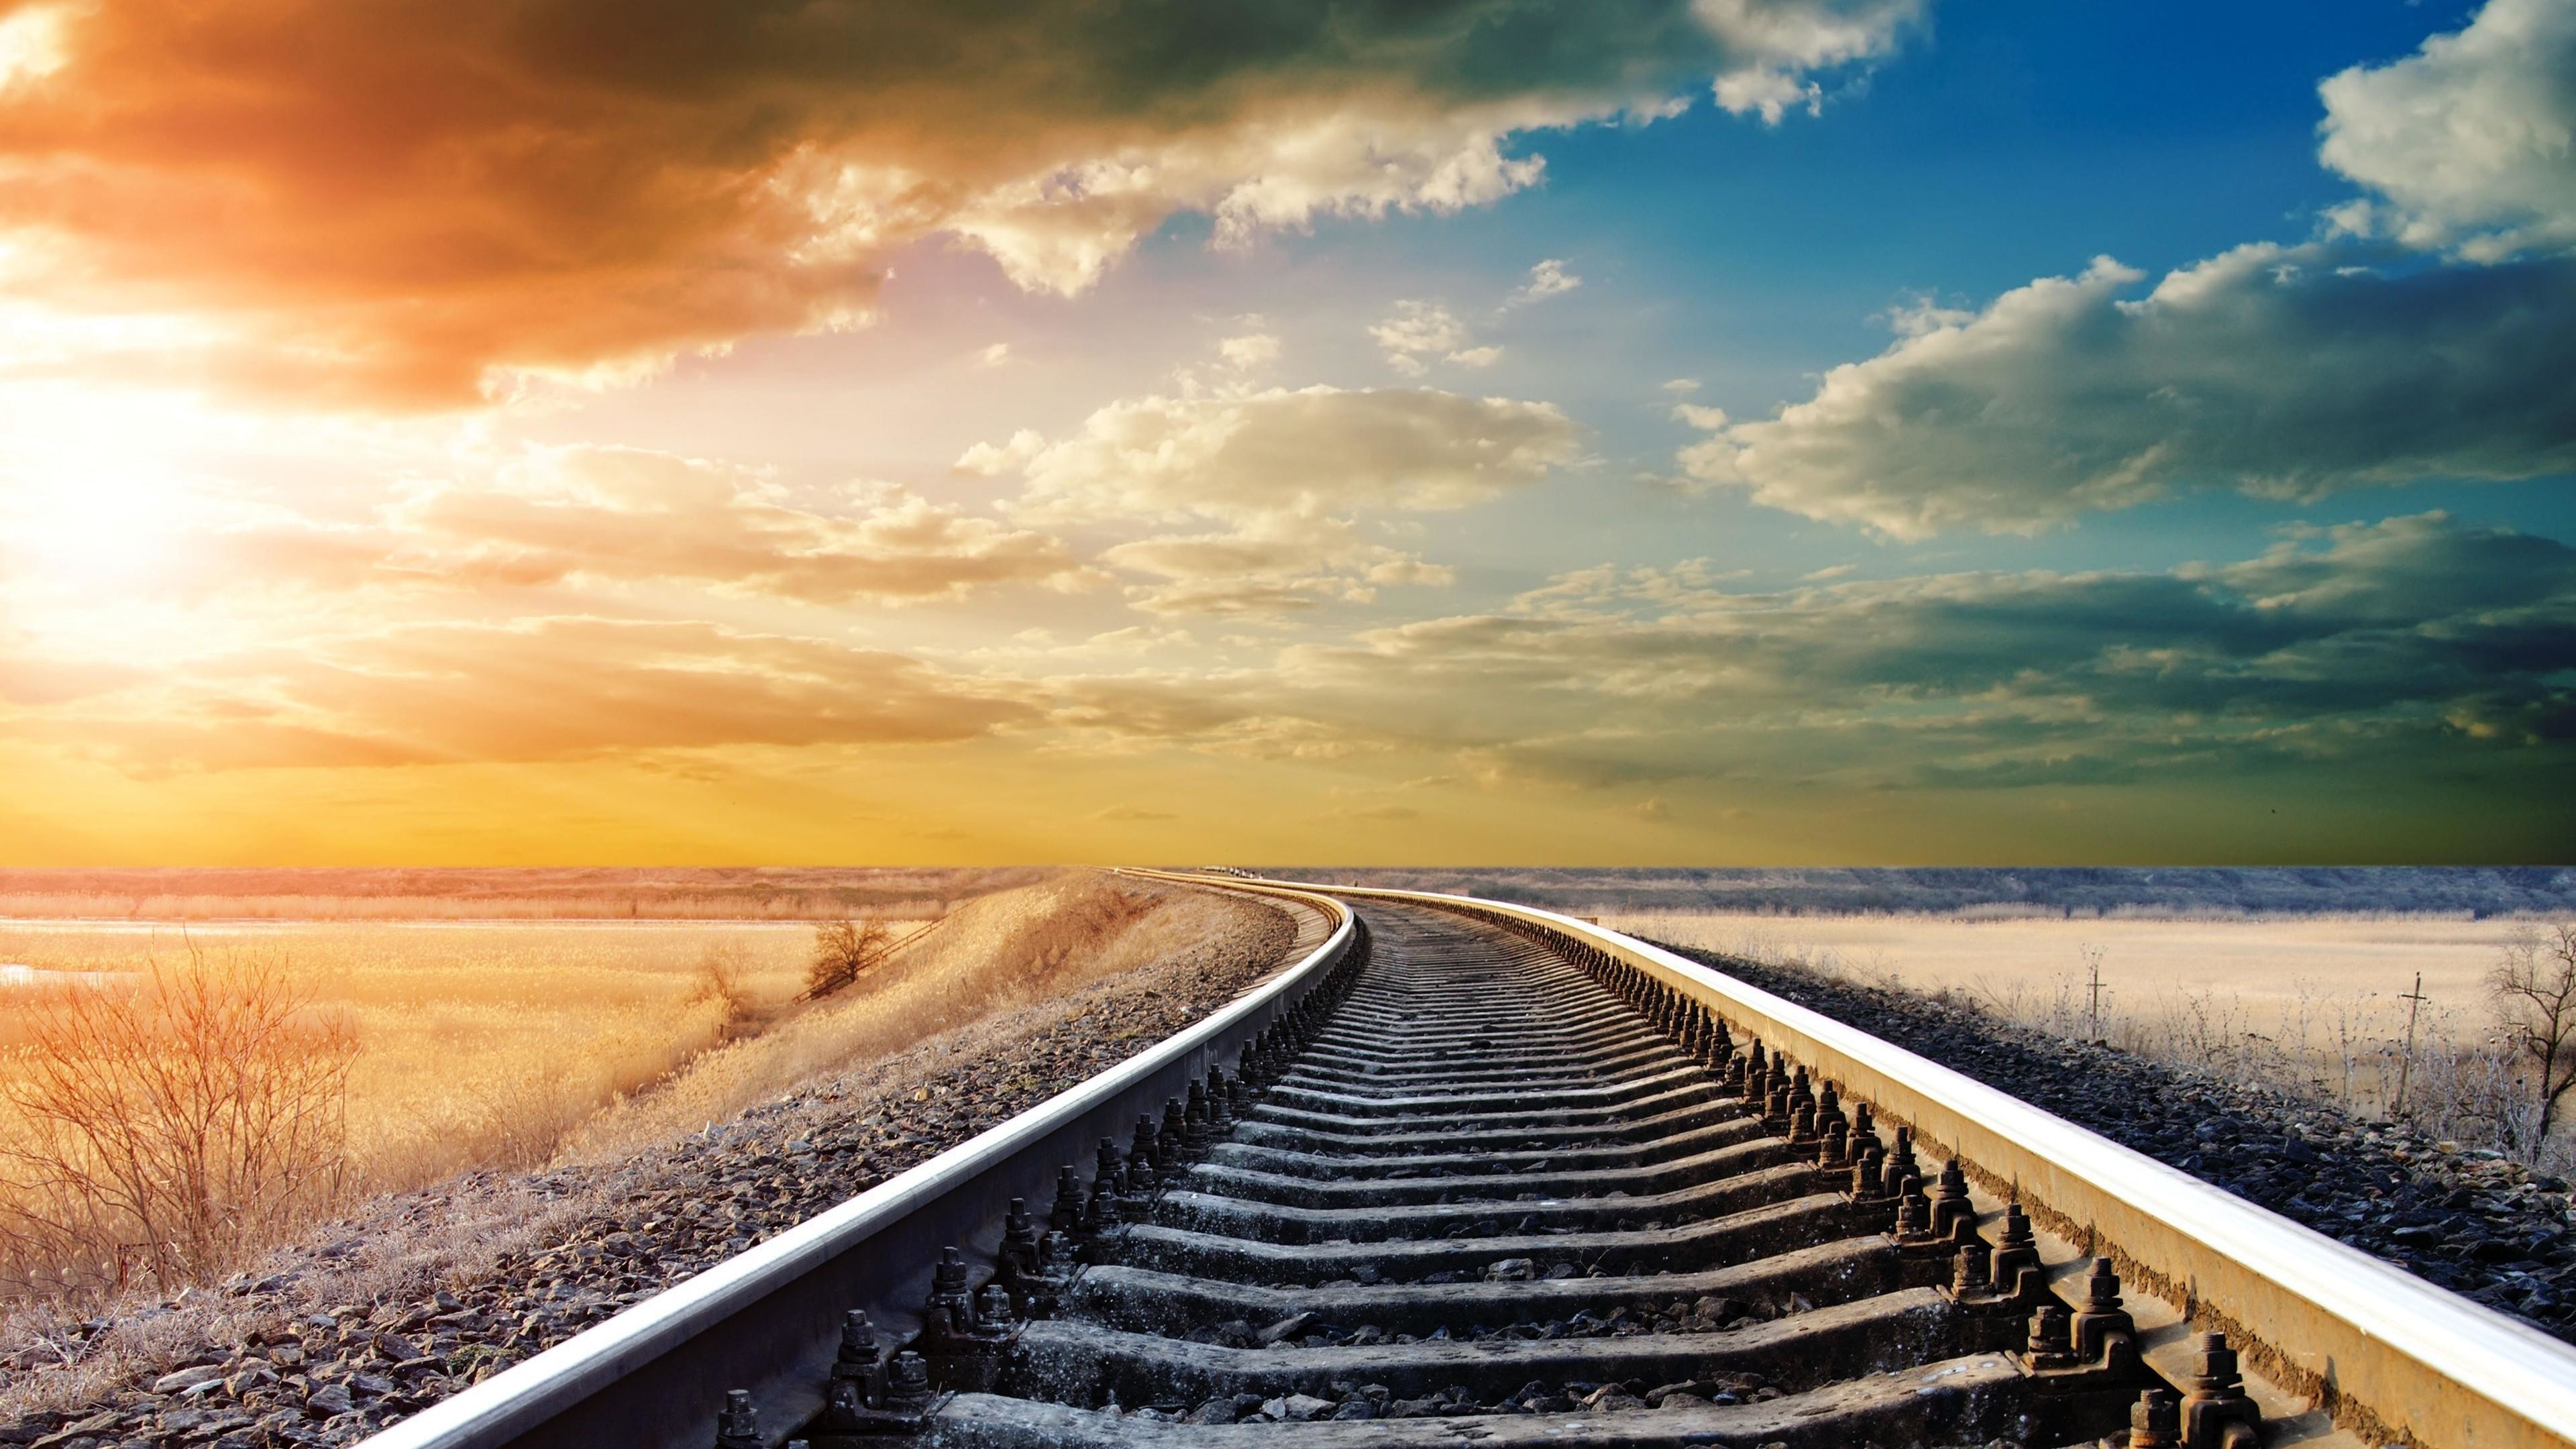 3840x2160, Endless Train Tracks In The Prairie Wallpaper - HD Wallpaper 